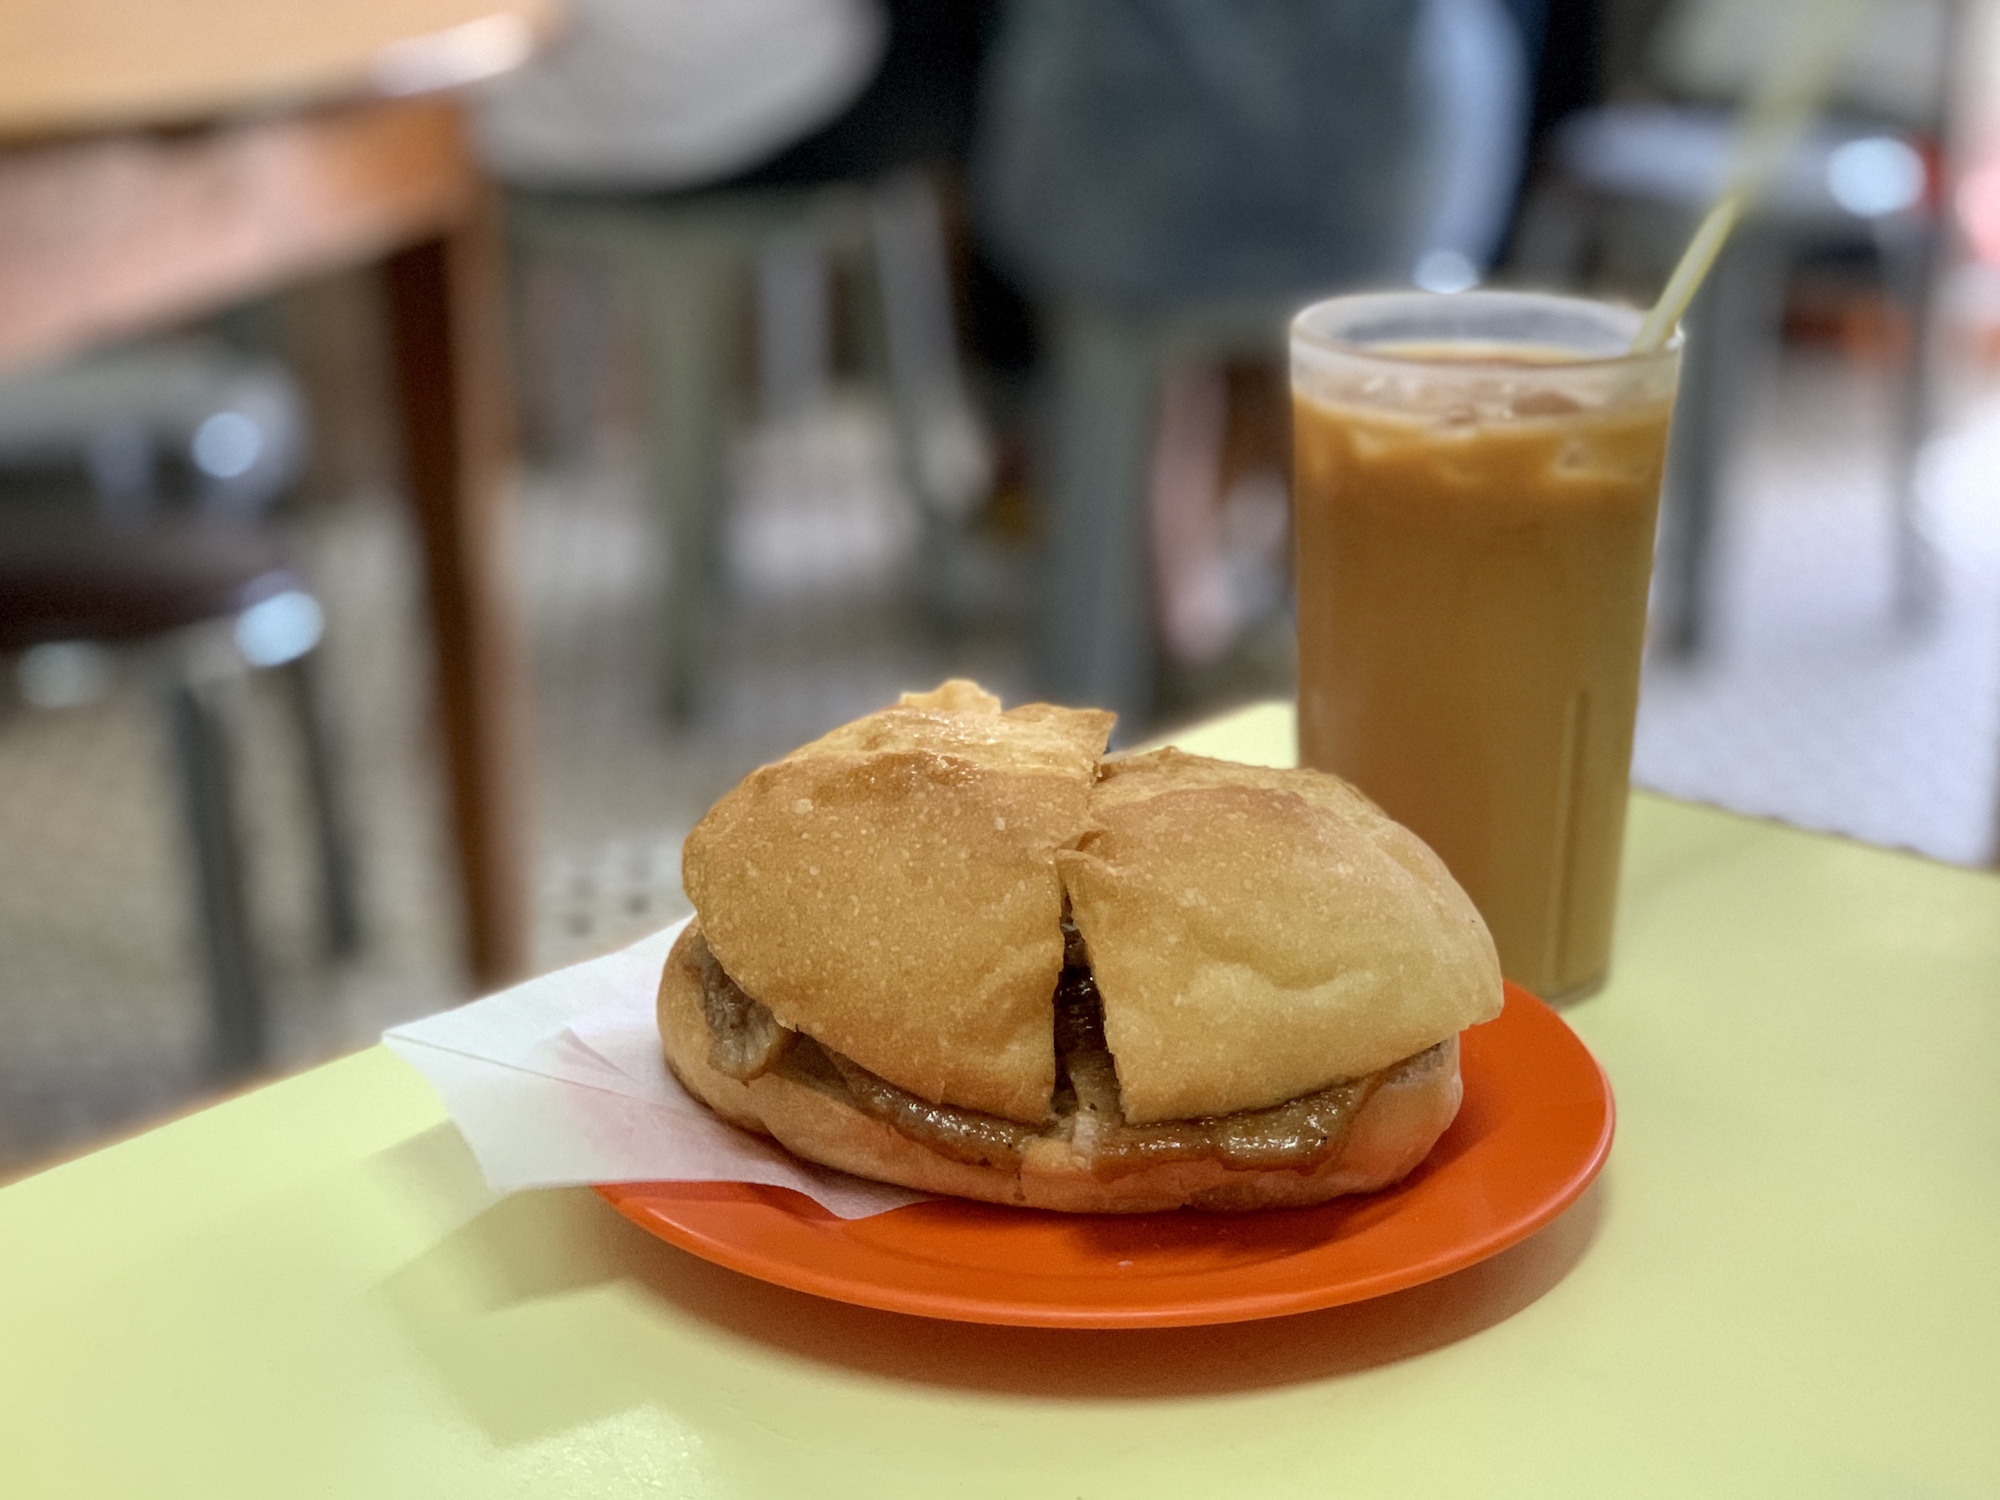 Heng Kei Cafe Interior Taipa Village Milk Tea and Pork Chop Bun Macau Lifestyle